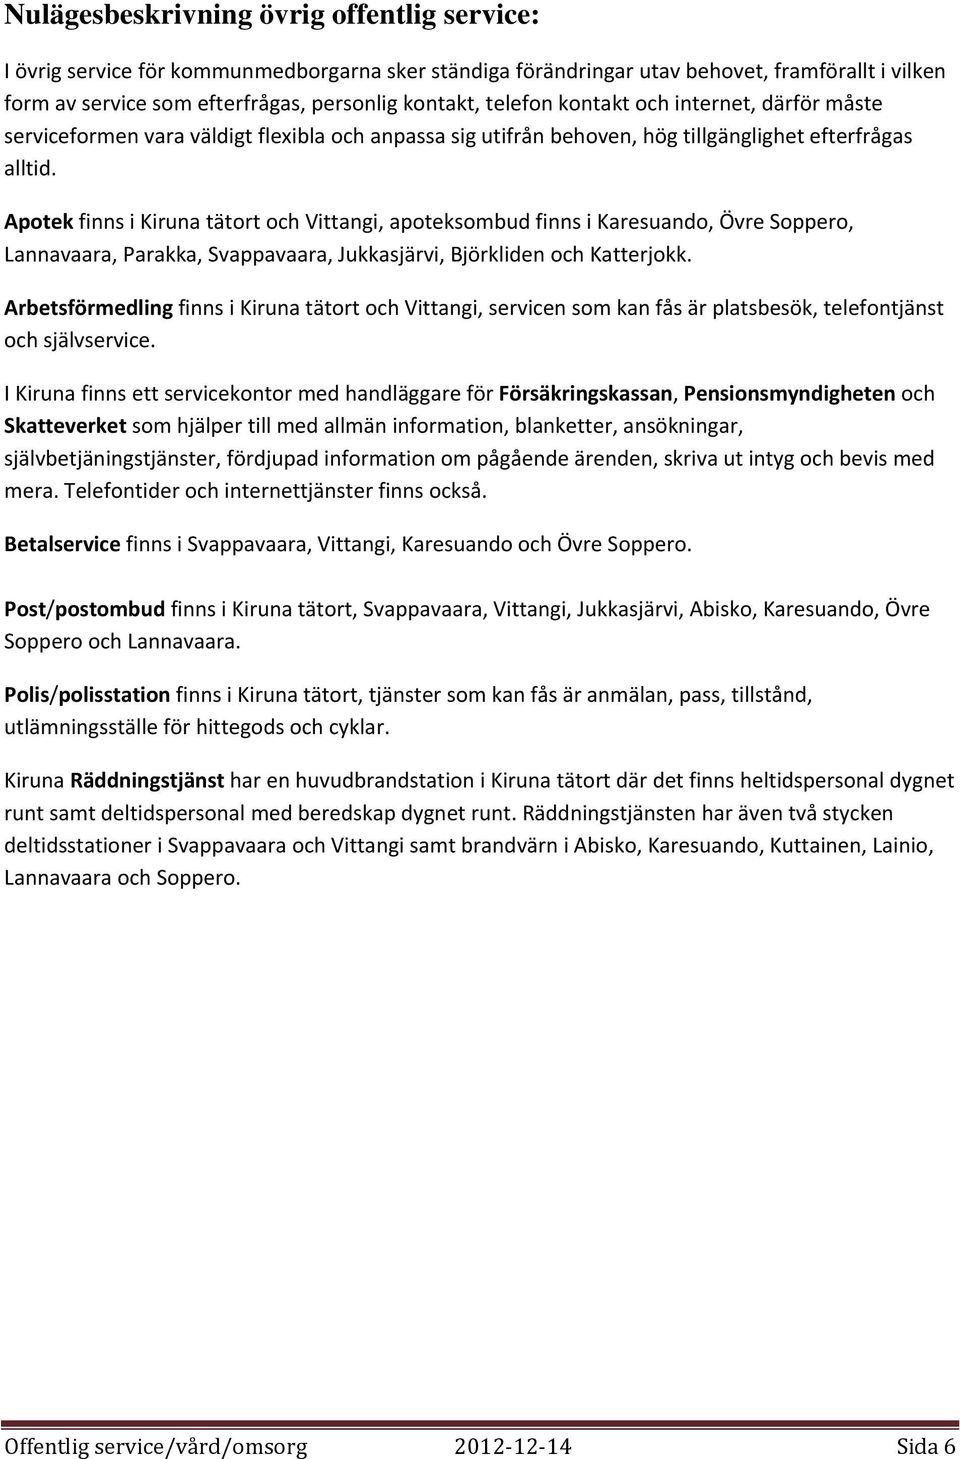 Apotek finns i Kiruna tätort och Vittangi, apoteksombud finns i Karesuando, Övre Soppero, Lannavaara, Parakka, Svappavaara, Jukkasjärvi, Björkliden och Katterjokk.